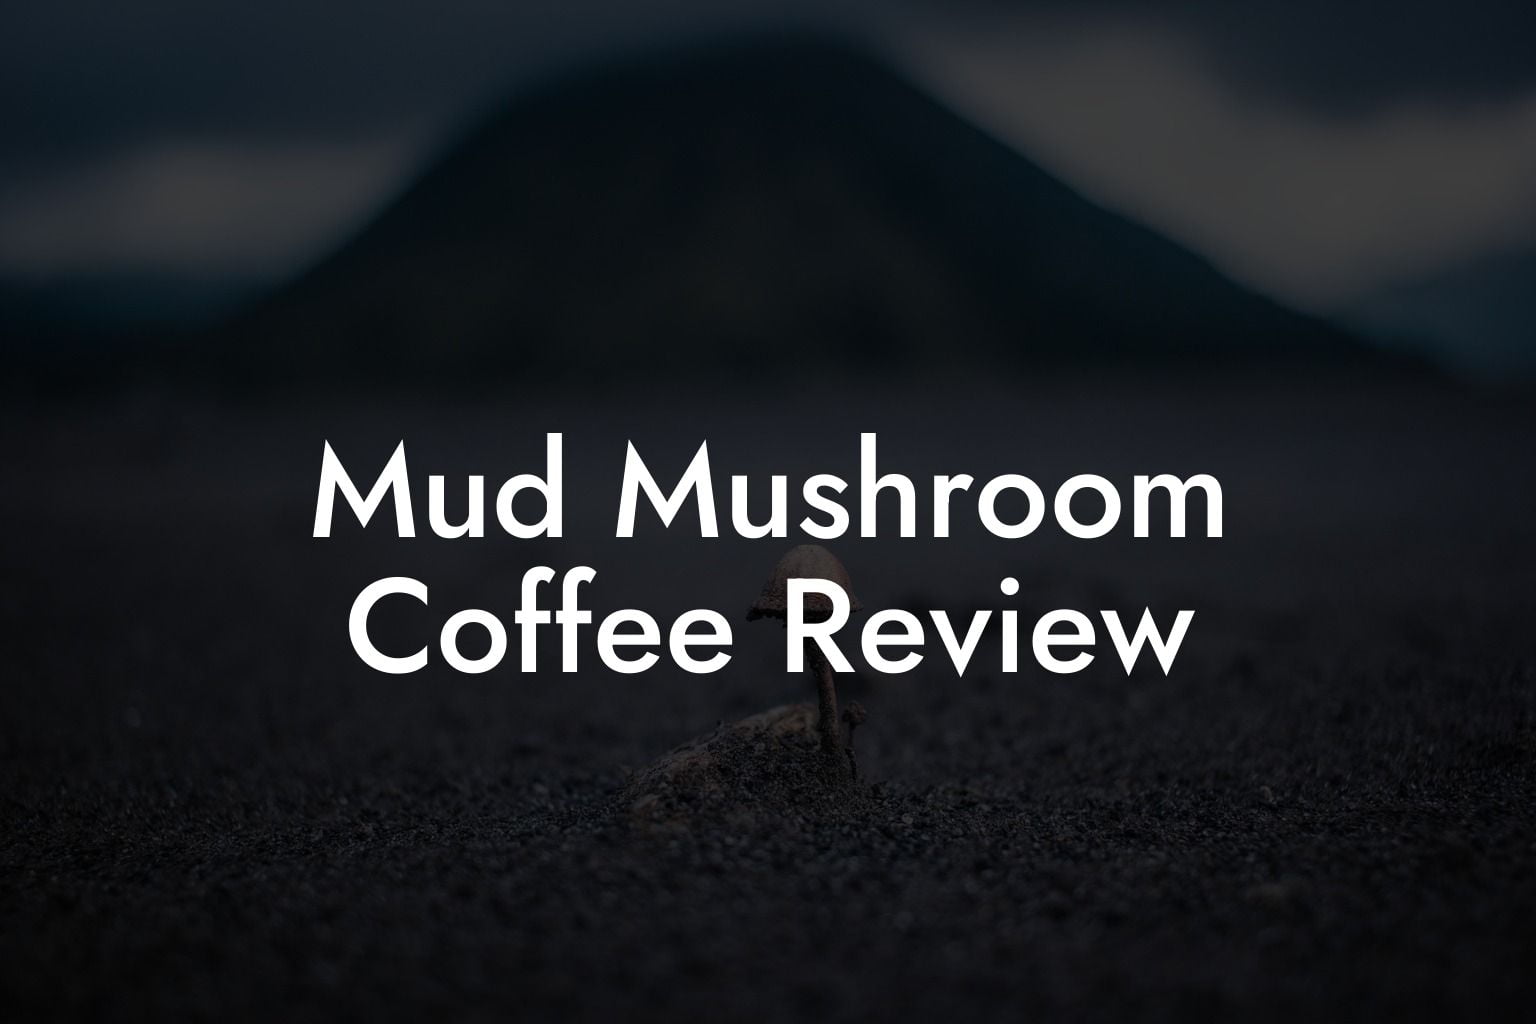 Mud Mushroom Coffee Review